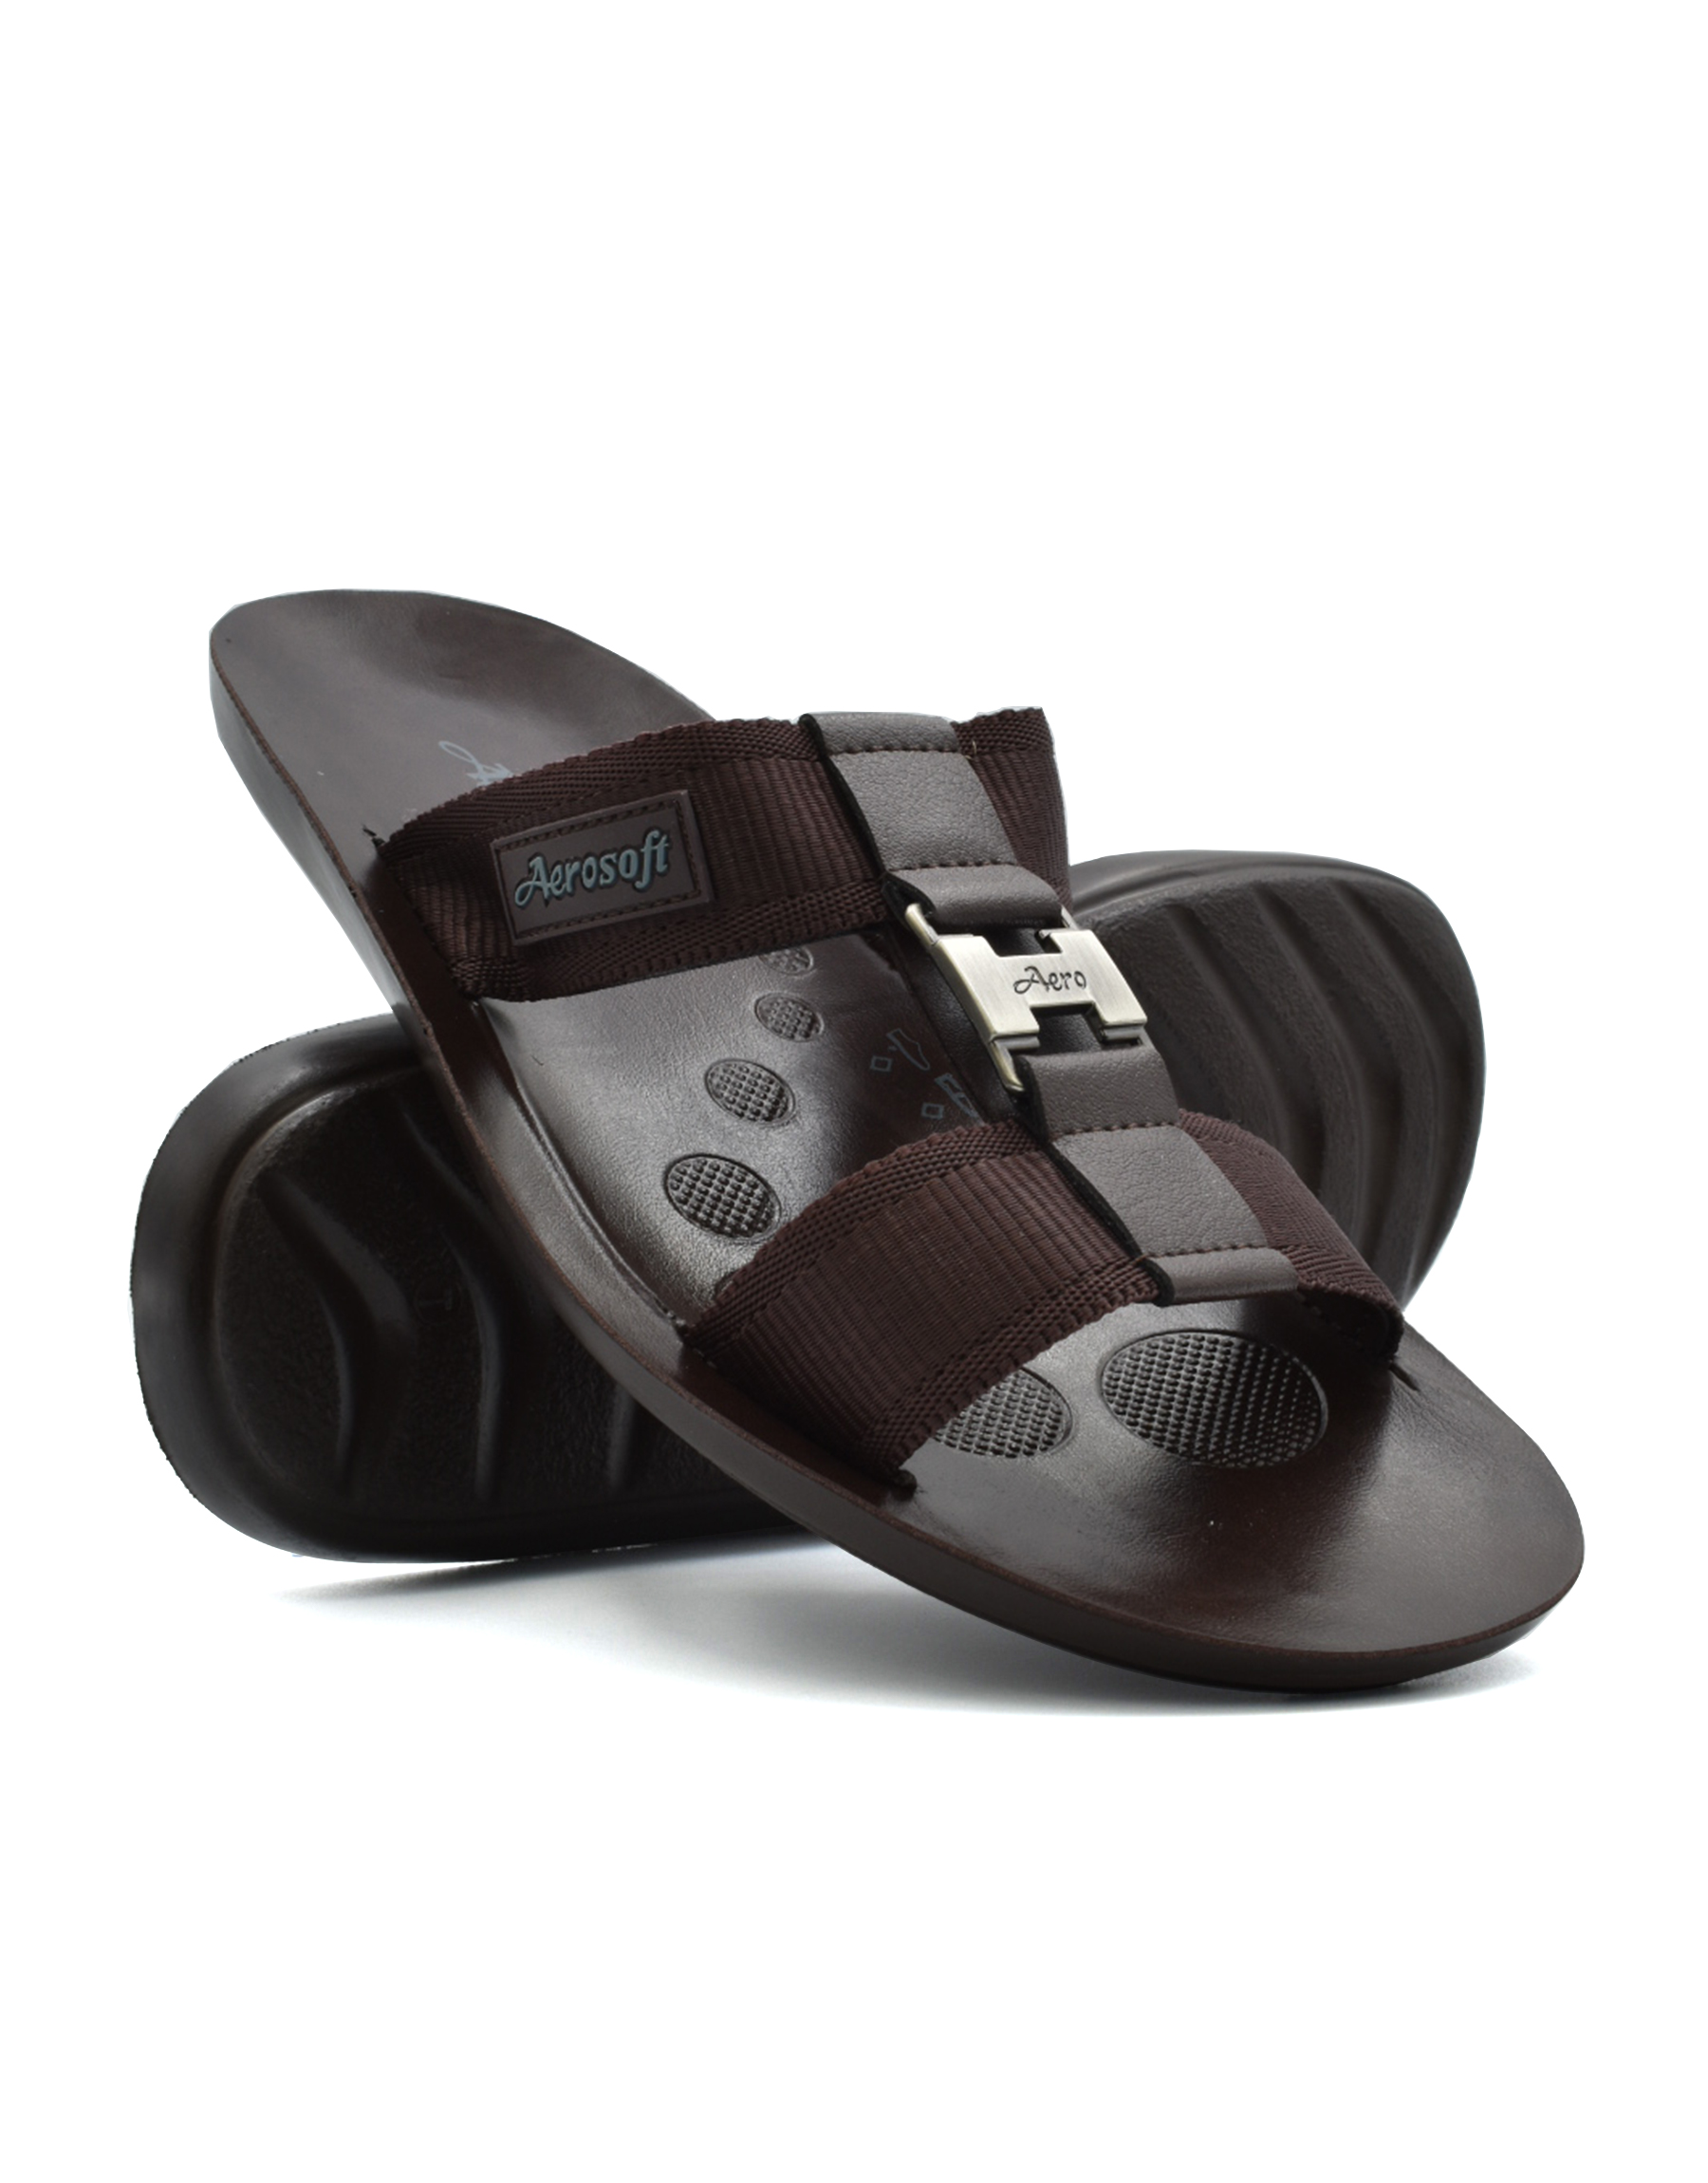 Aerosoft Slippers for Ladies A0867 | AeroSoft Footwear